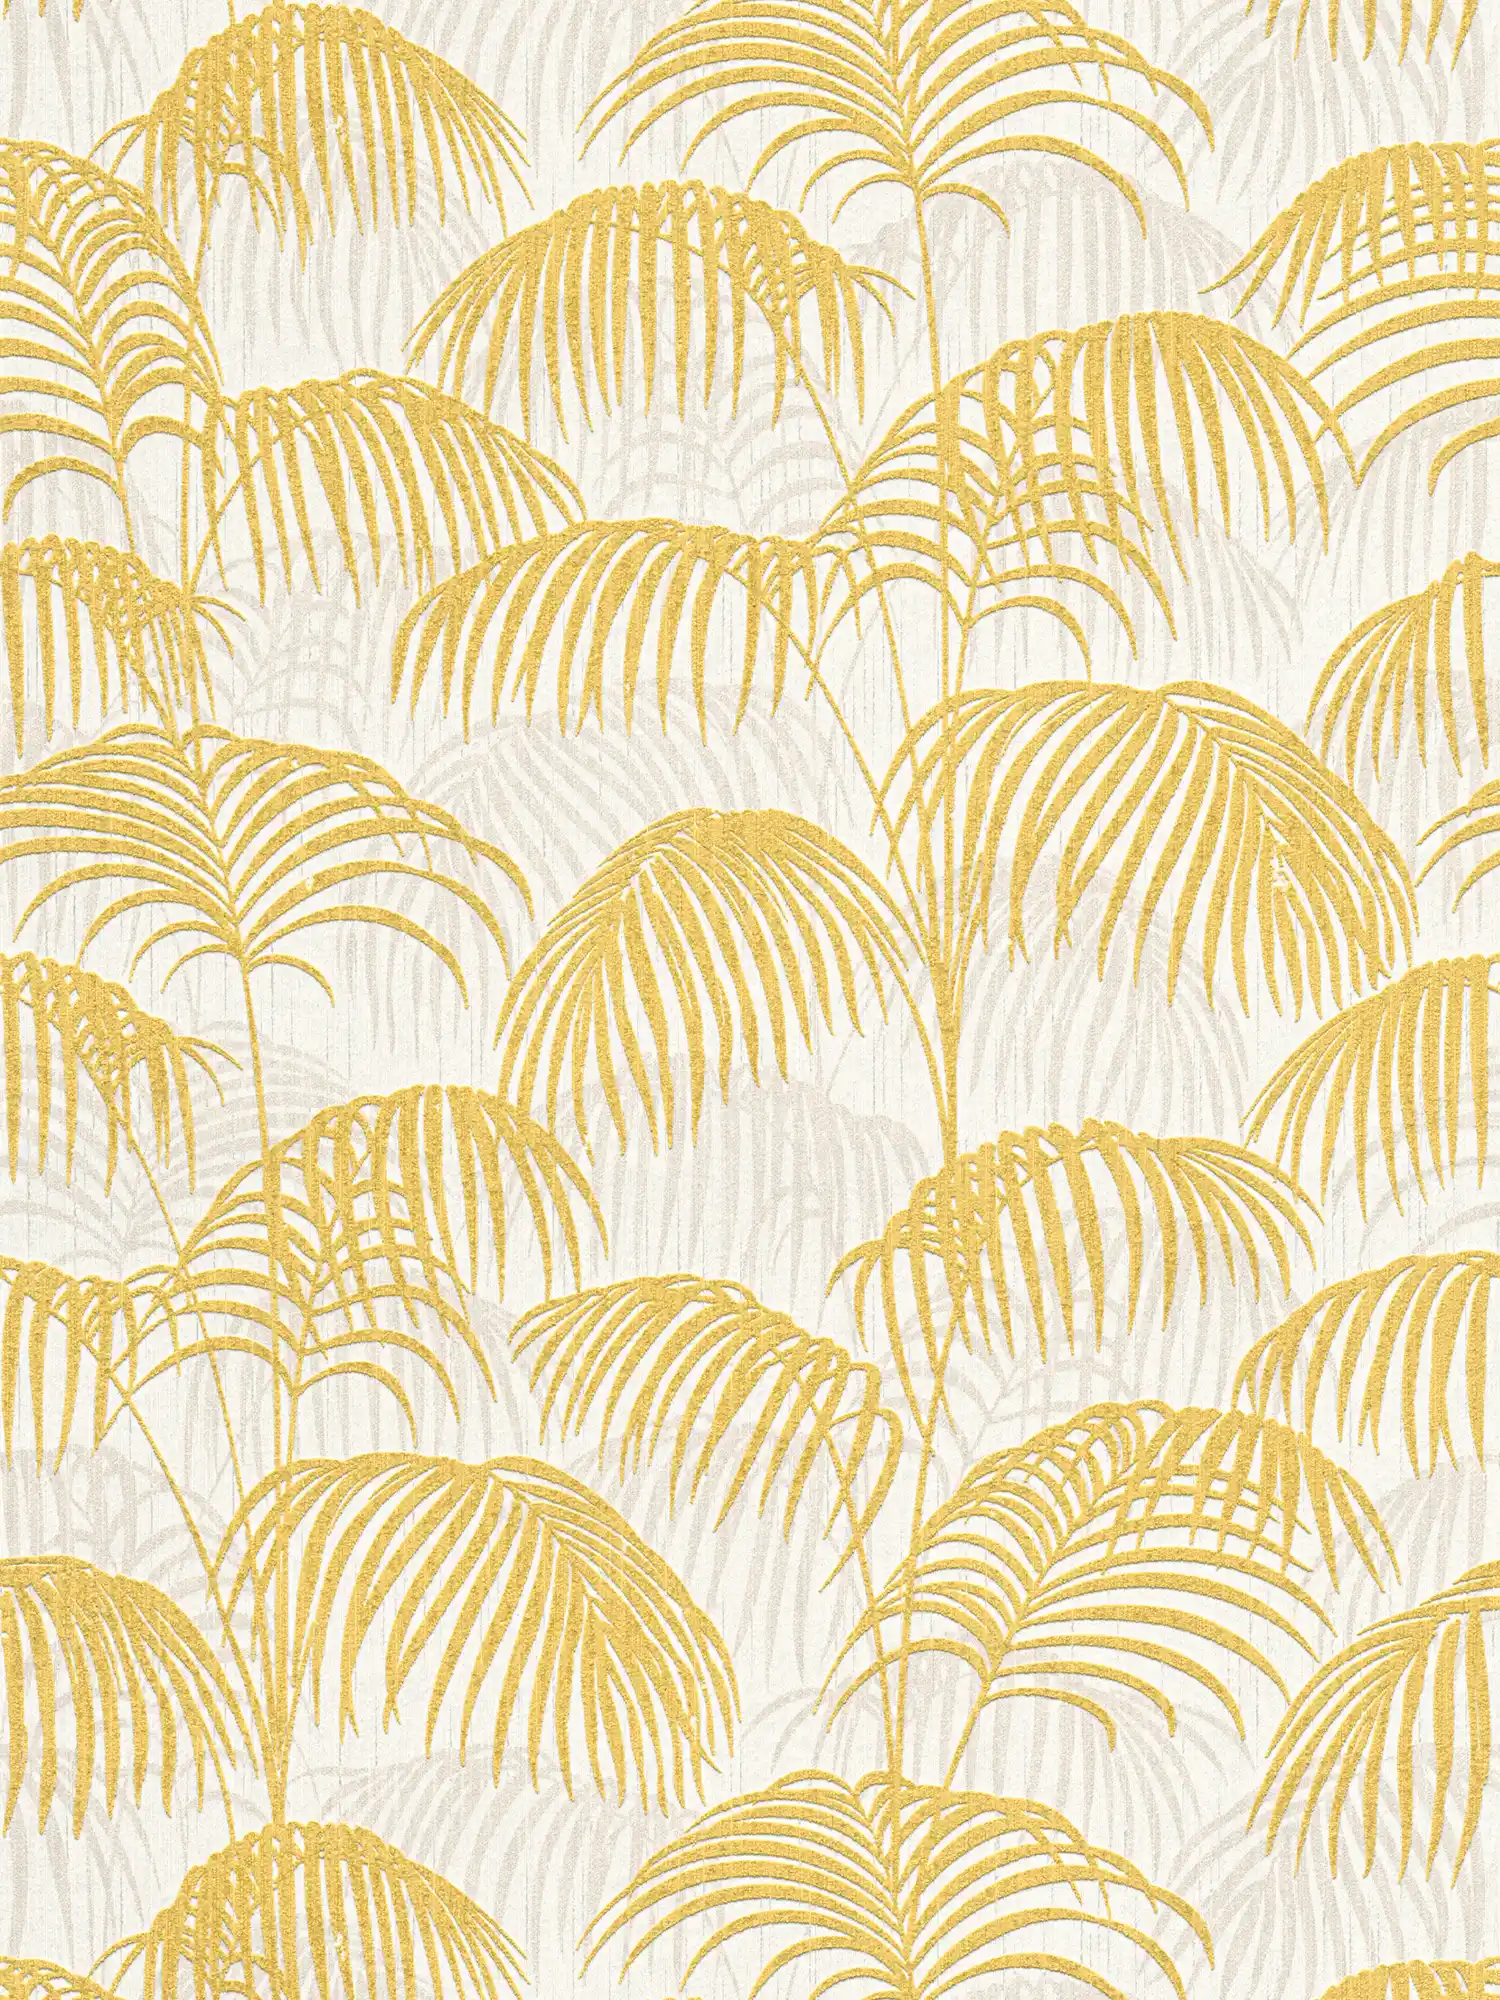 Palm behang met goud effect & structuur design - metallic, wit
